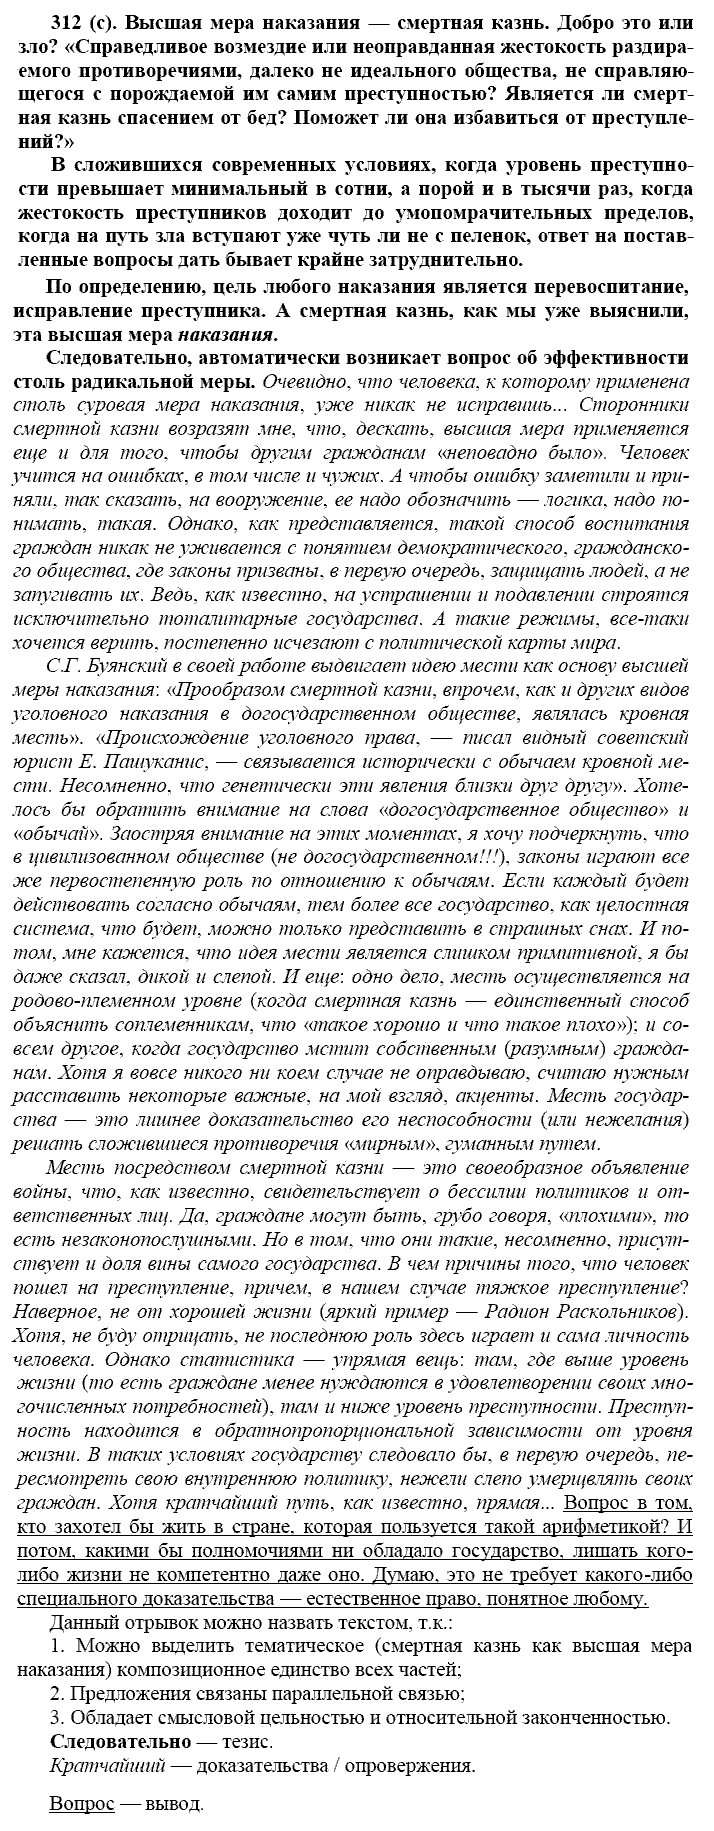 Русский язык, 11 класс, Власенков, Рыбченков, 2009-2014, задание: 312 (с)